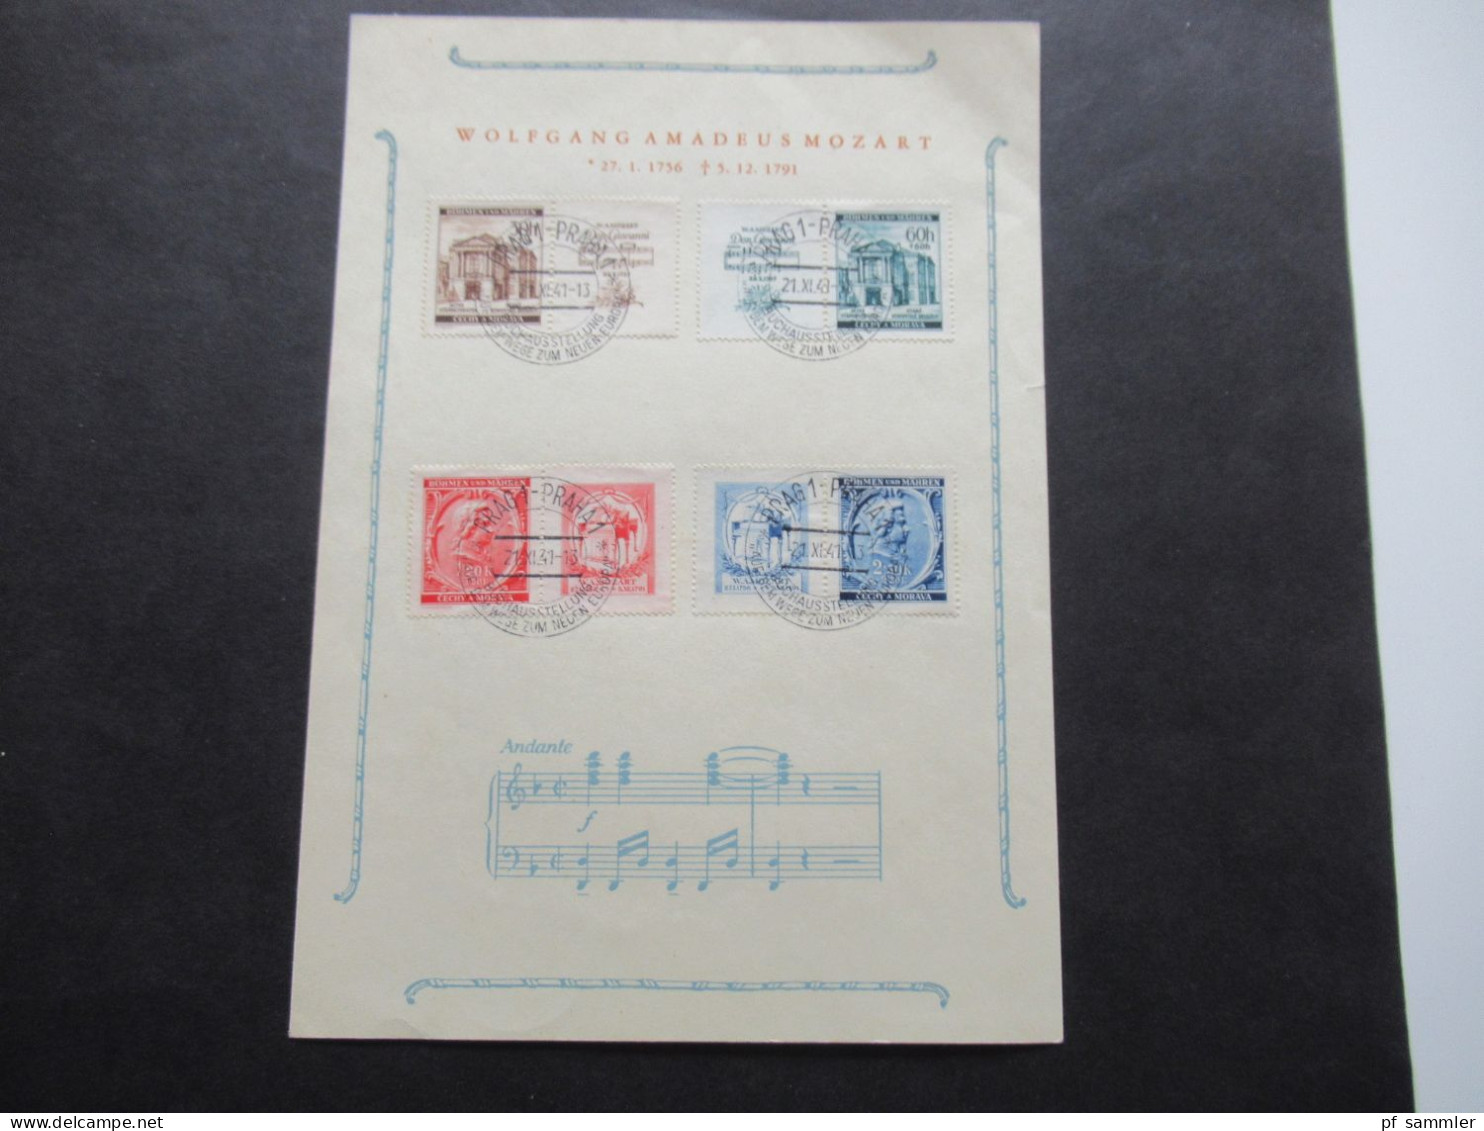 Böhmen Und Mähren 1941 Sonderblatt Mozart / Andate Mit Den Zusammendrucken Mi.Nr,79 / 82 SSt Prag 1 - Cartas & Documentos